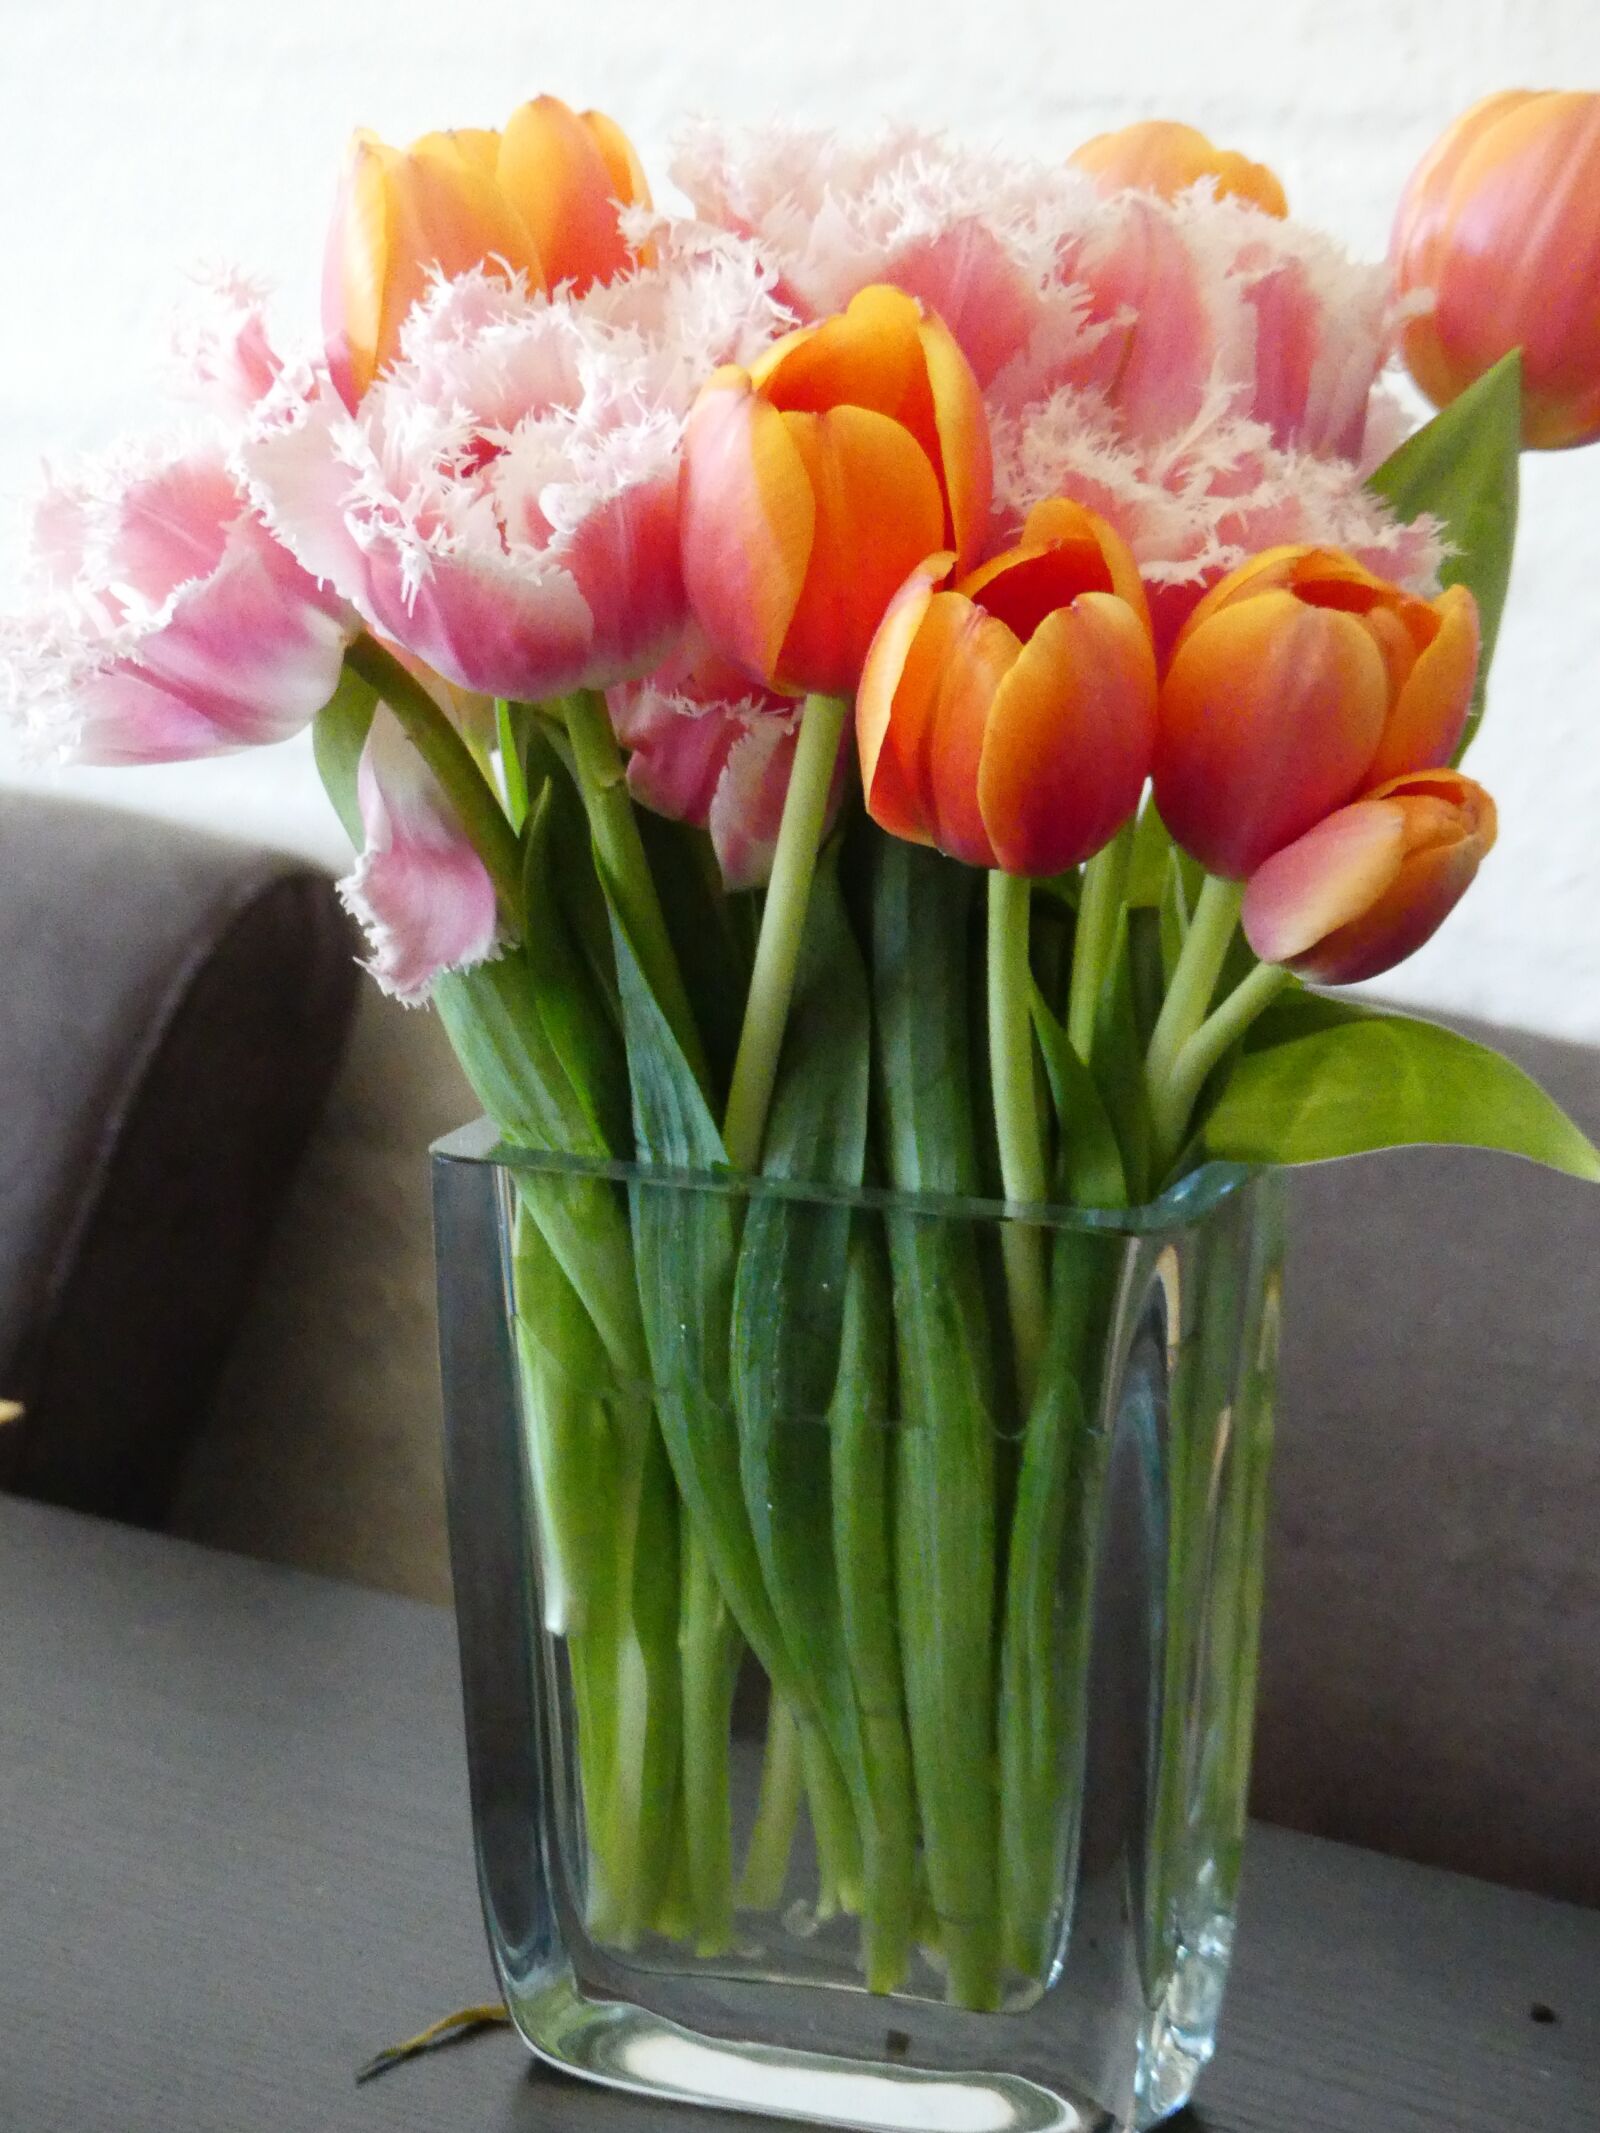 Panasonic Lumix DMC-FZ300 sample photo. Tulips, flower vase, vase photography